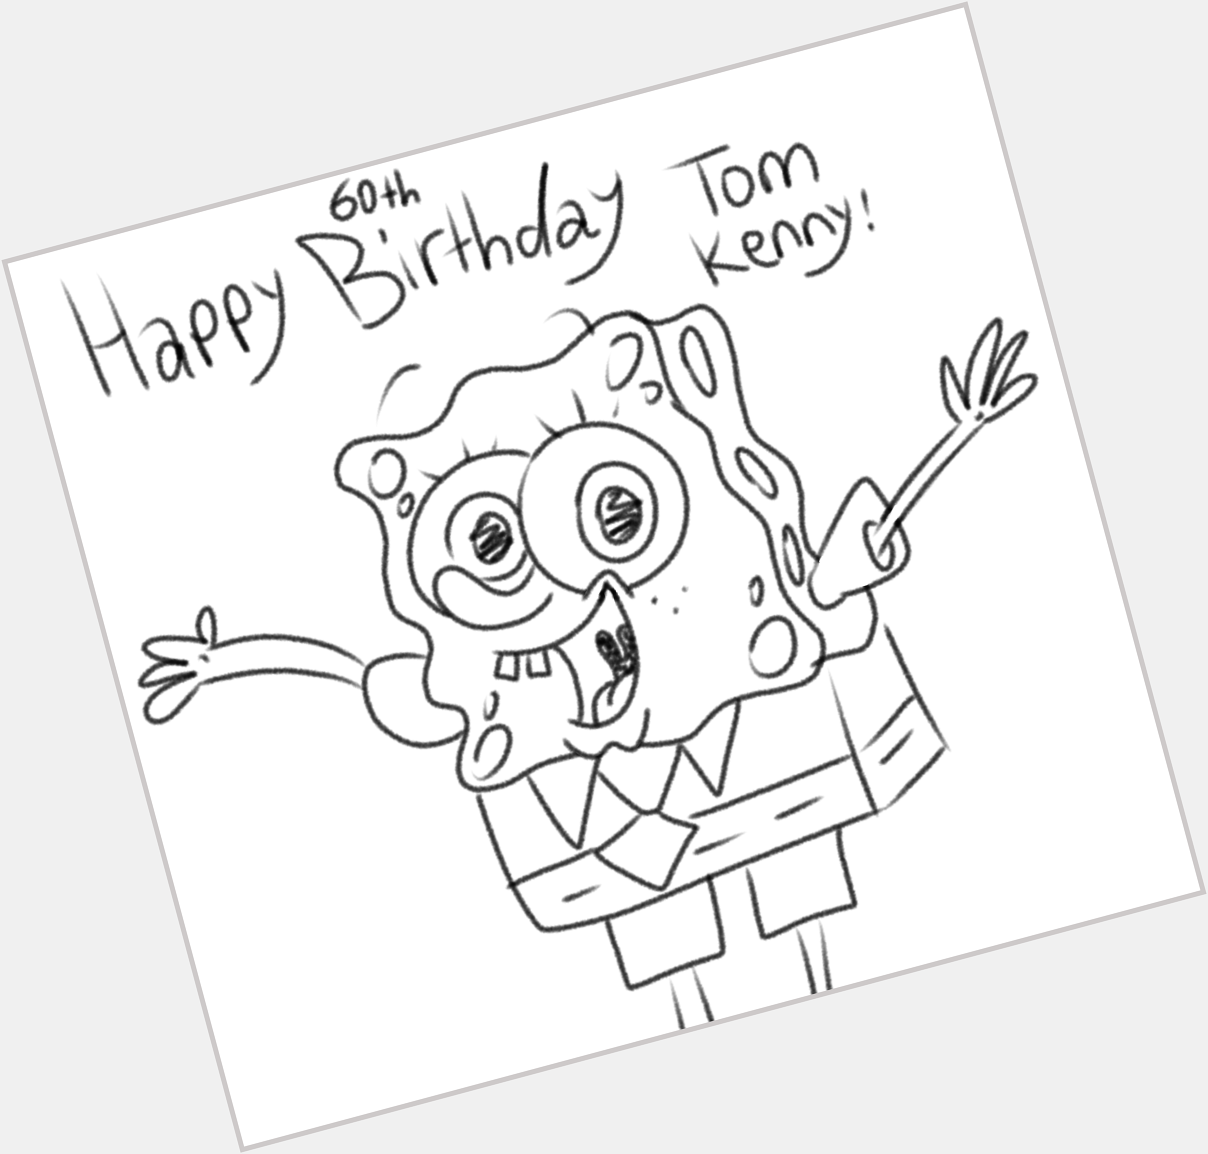 Happy 60th Birthday Tom Kenny! 